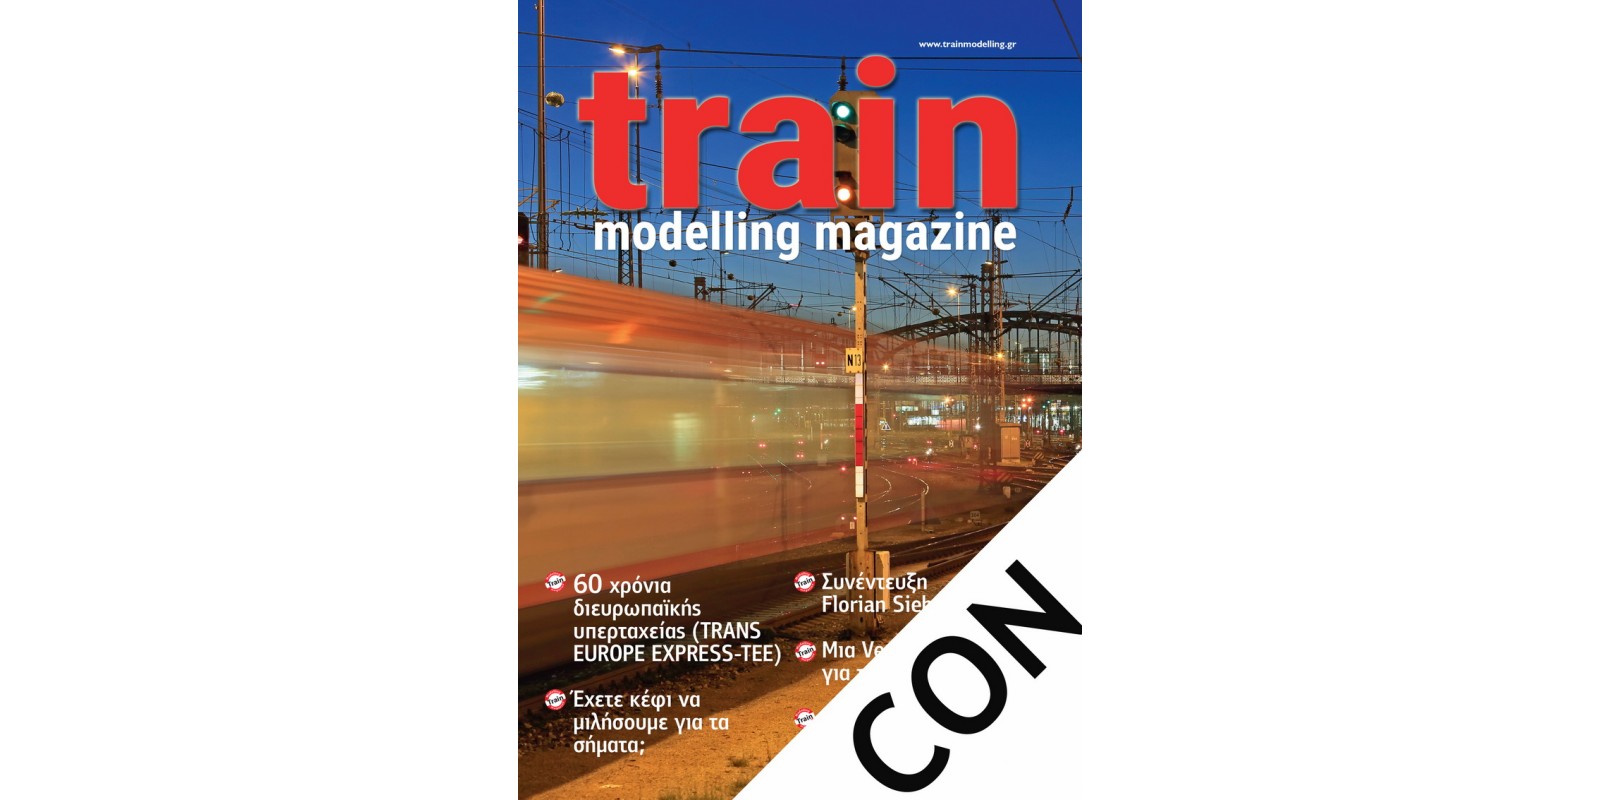 TMMSUB-CON Ετήσια Συνδρομή (6 διμηνιαία τεύχη) στο Περιοδικό Train Modelling Magazine (ελληνική έκδοση) για παράδοση στην ηπειρωτική Ελλάδα